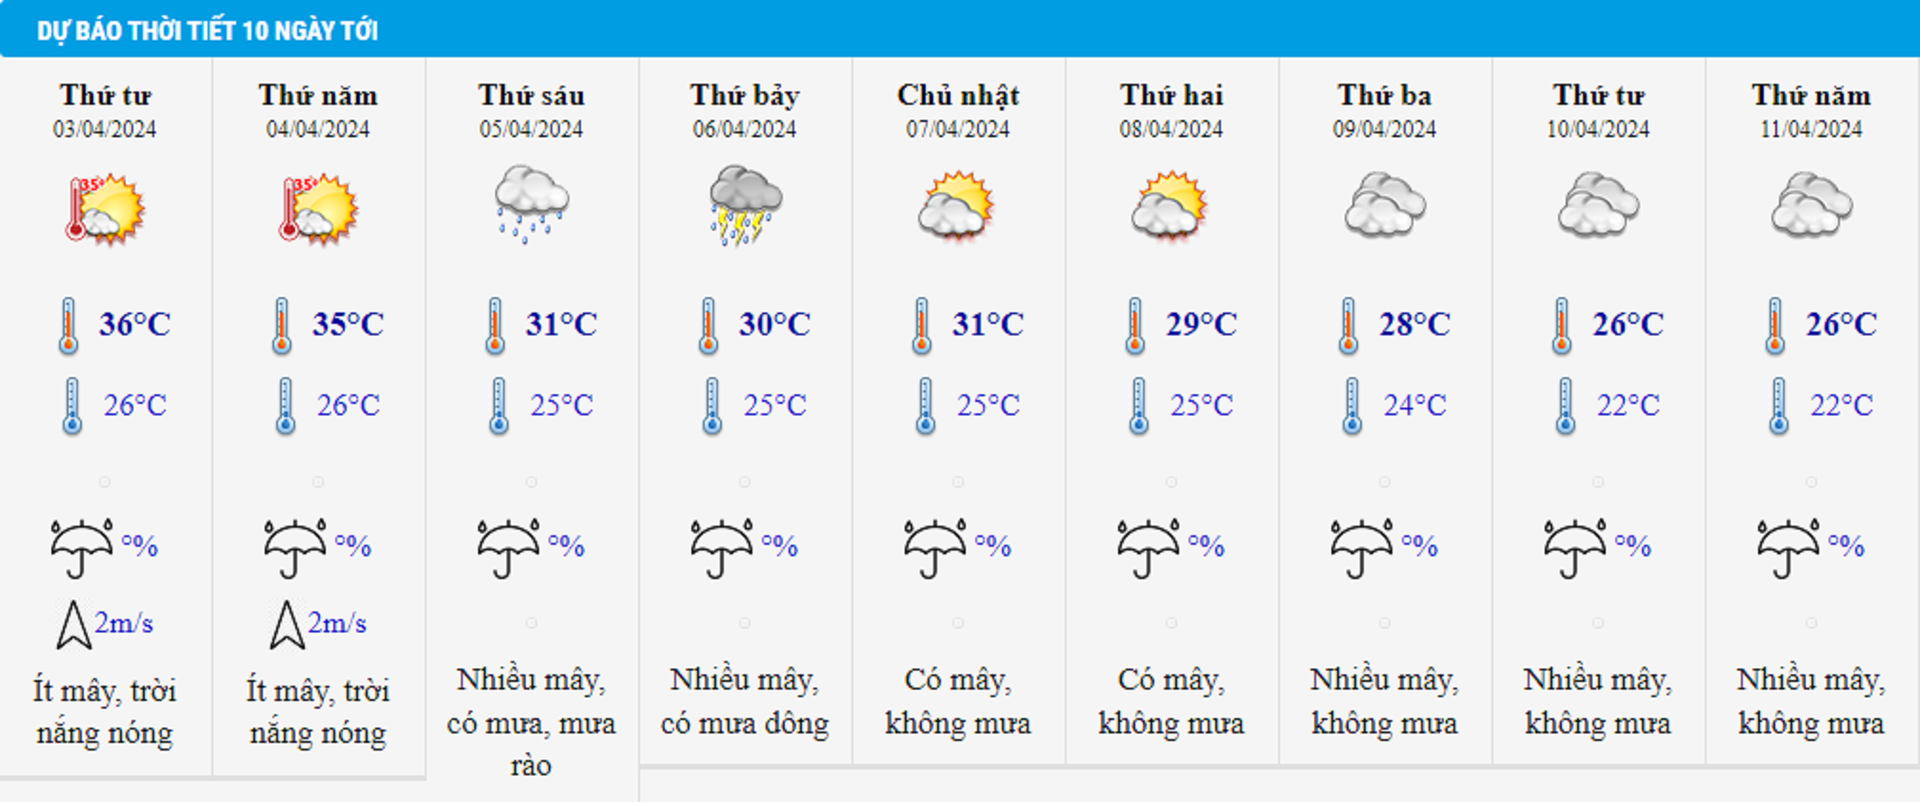 Dự báo thời tiết 10 ngày từ đêm 2/4 đến 11/4 cho Hà Nội và cả nước - 2